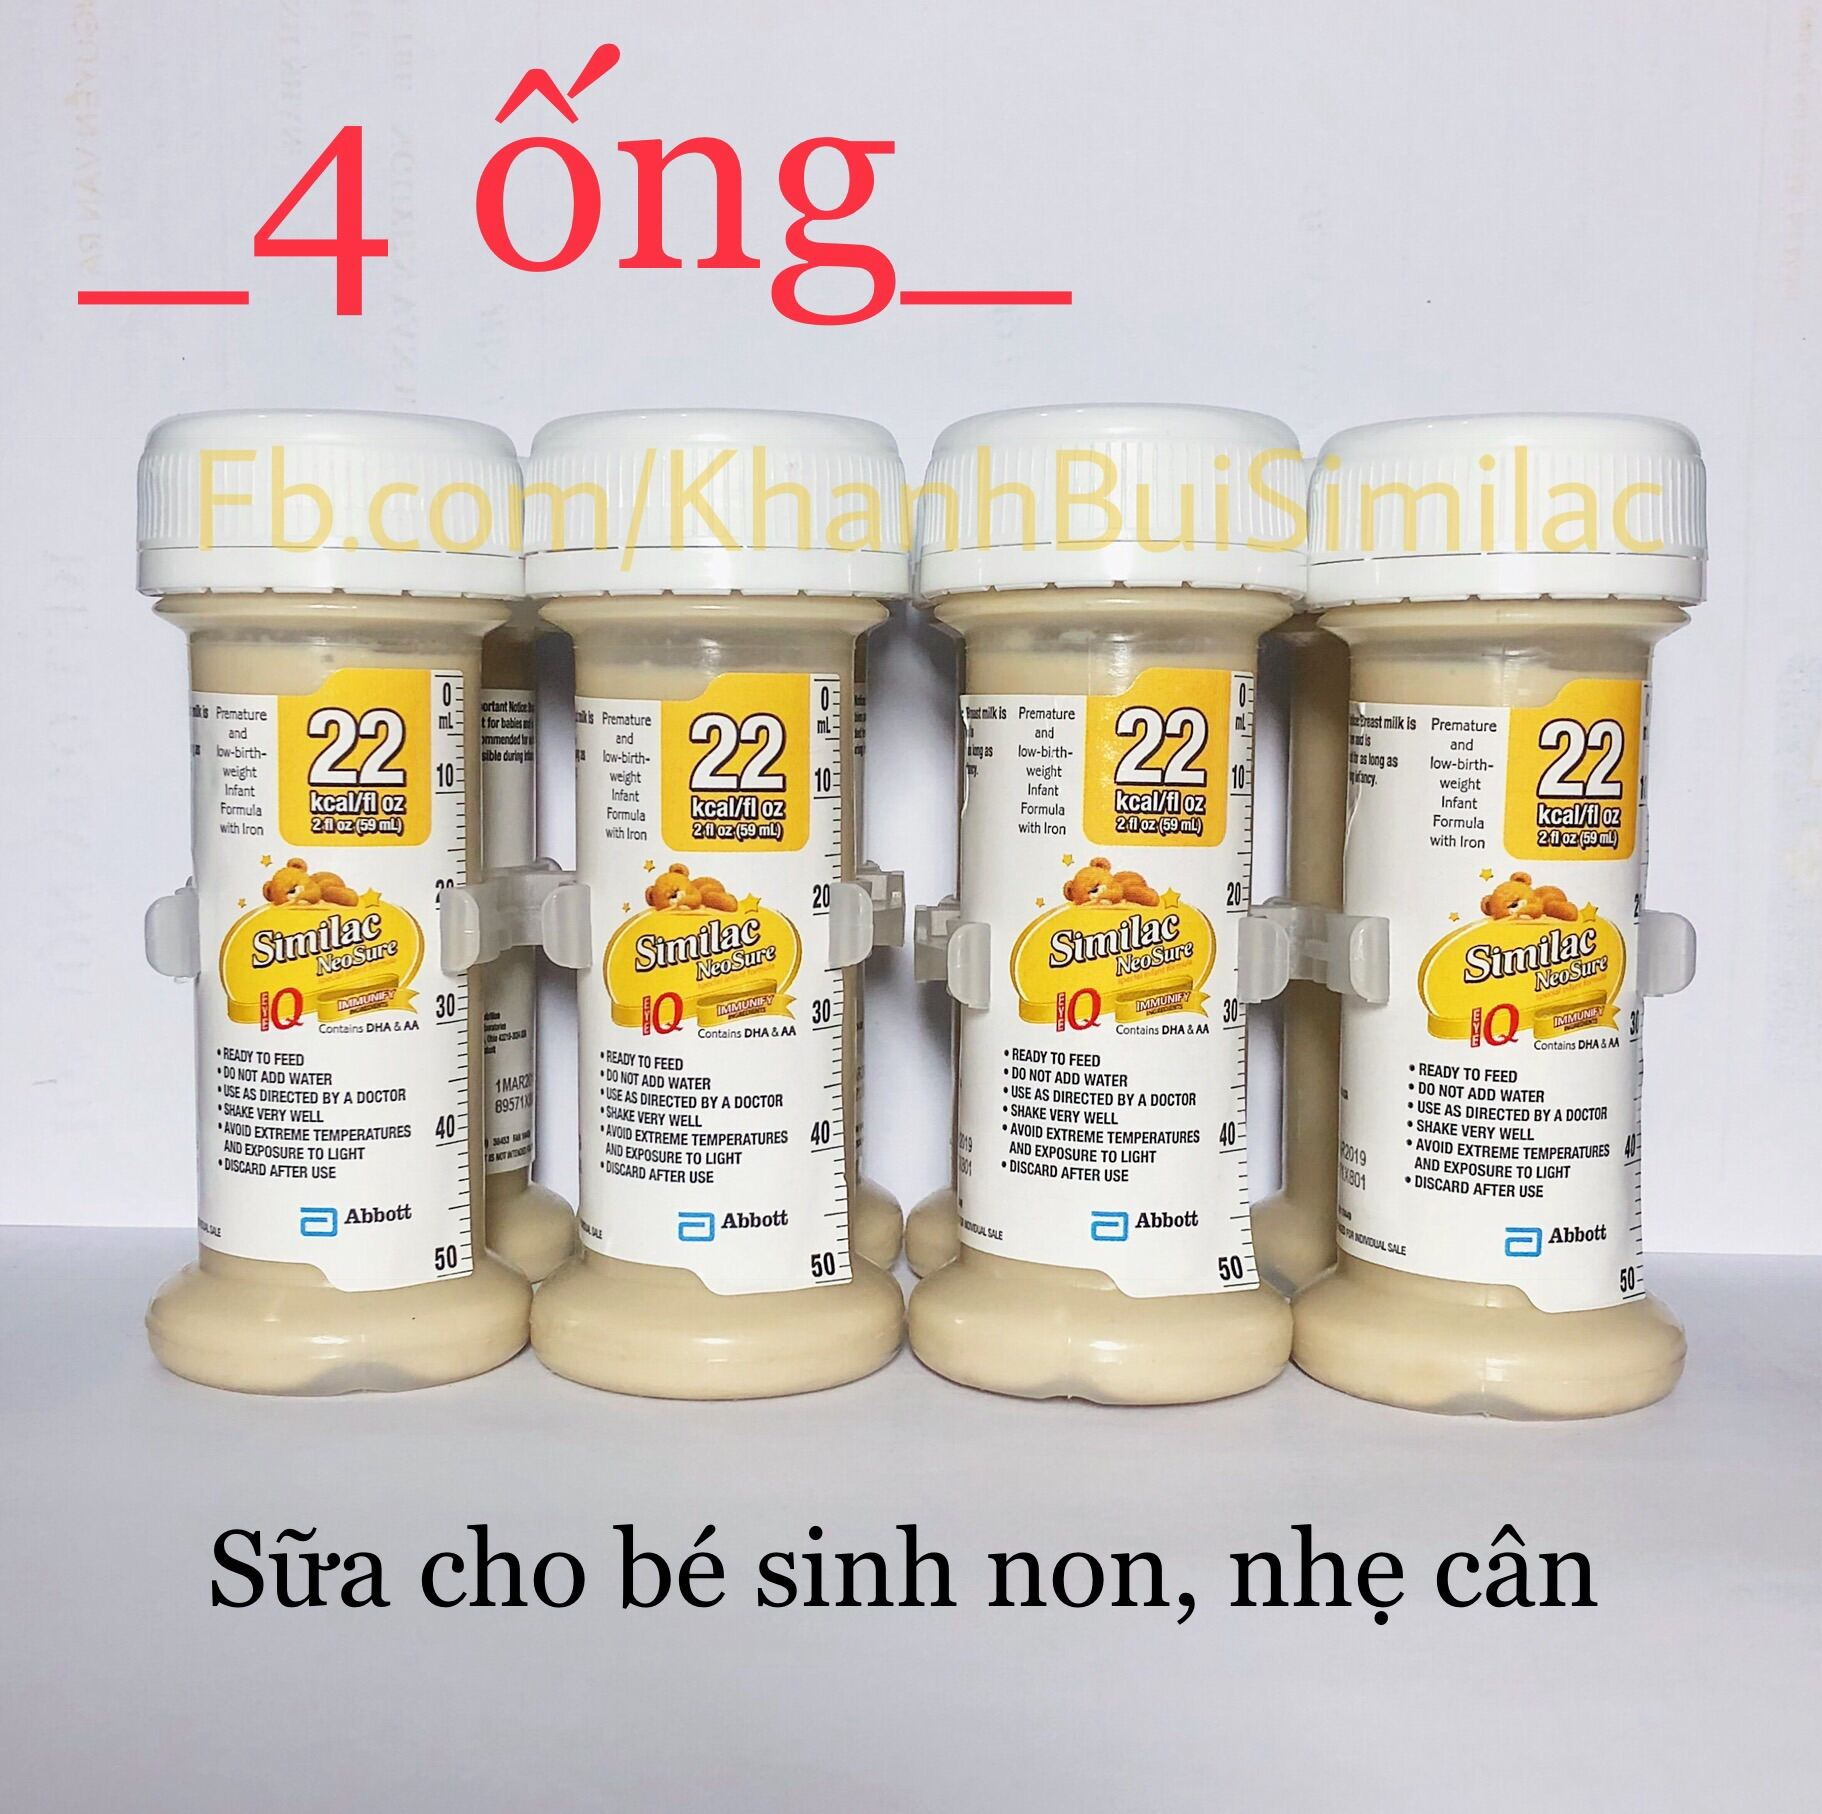 48 ống Sữa nước Similac Neosure 59ml 22 kcal fl oz cho trẻ sinh non, nhẹ